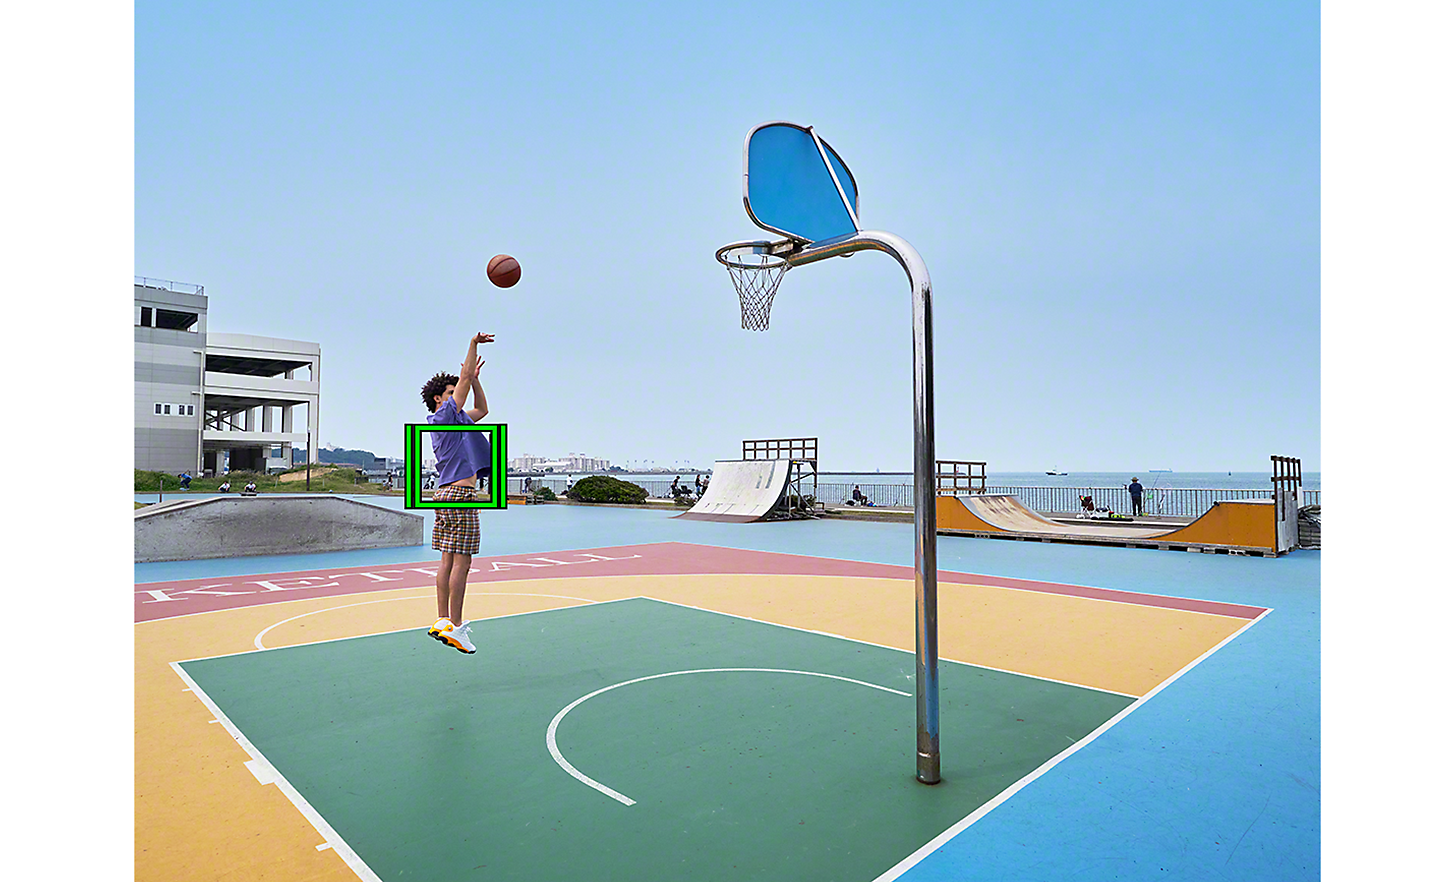 Un basketteur en plein saut pour tirer, un carré vert qui représente le suivi en temps réel